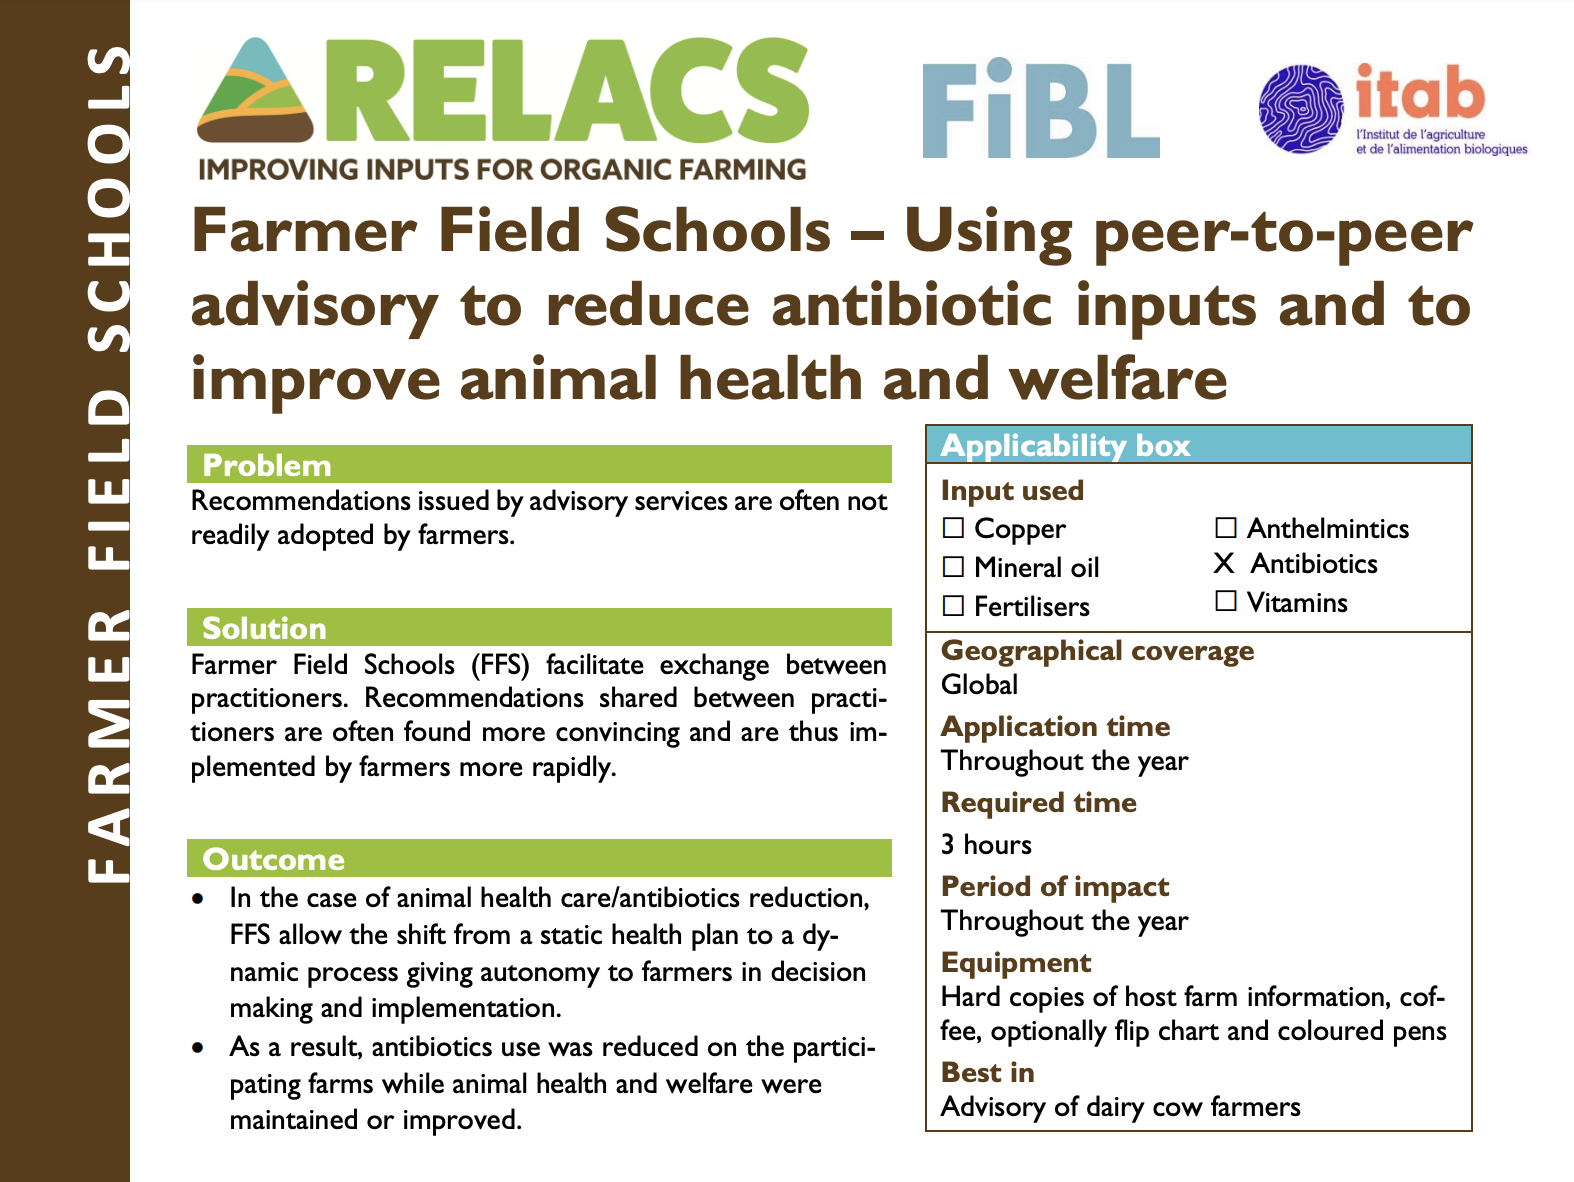 Farmer Field Schools – Peer-to-peer advies gebruiken om de input van antibiotica te verminderen en de gezondheid en het welzijn van dieren te verbeteren (RELACS Practice Abstract)